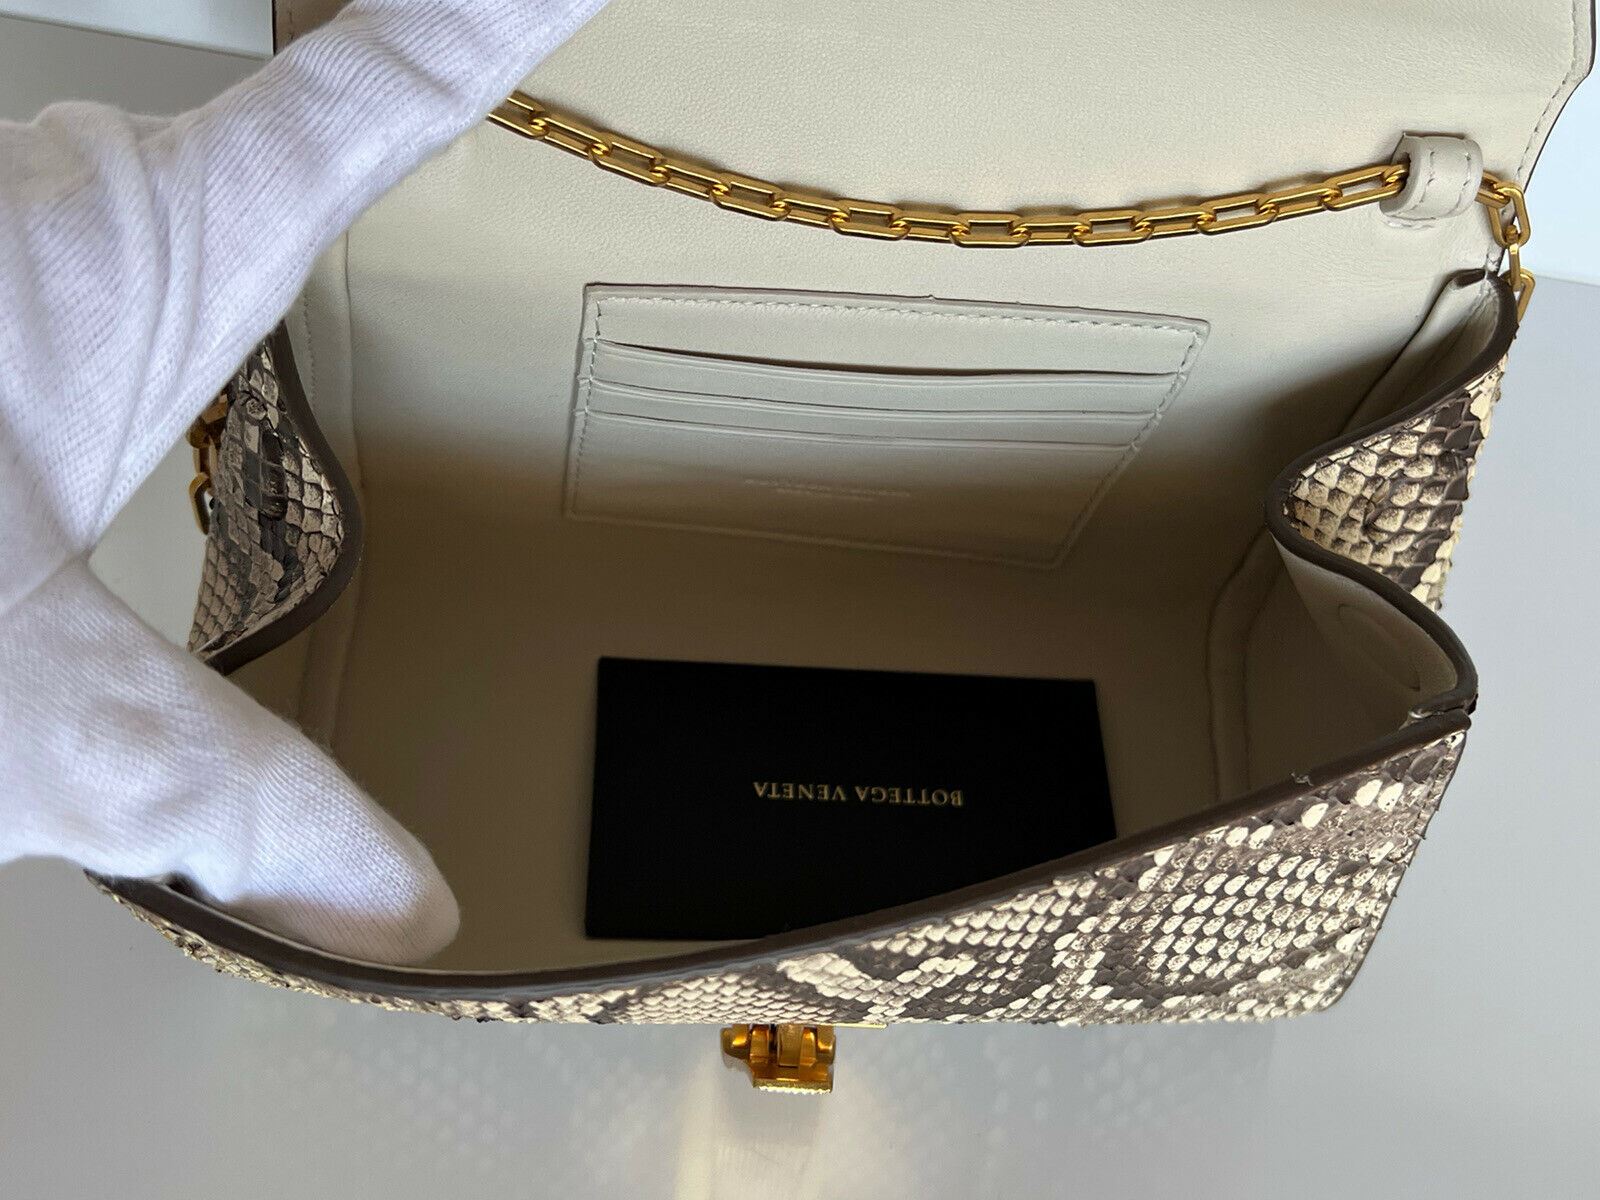 Мини-сумка Bottega Veneta из кожи питона с ремешком-цепочкой NWT $2550 608798 Италия 